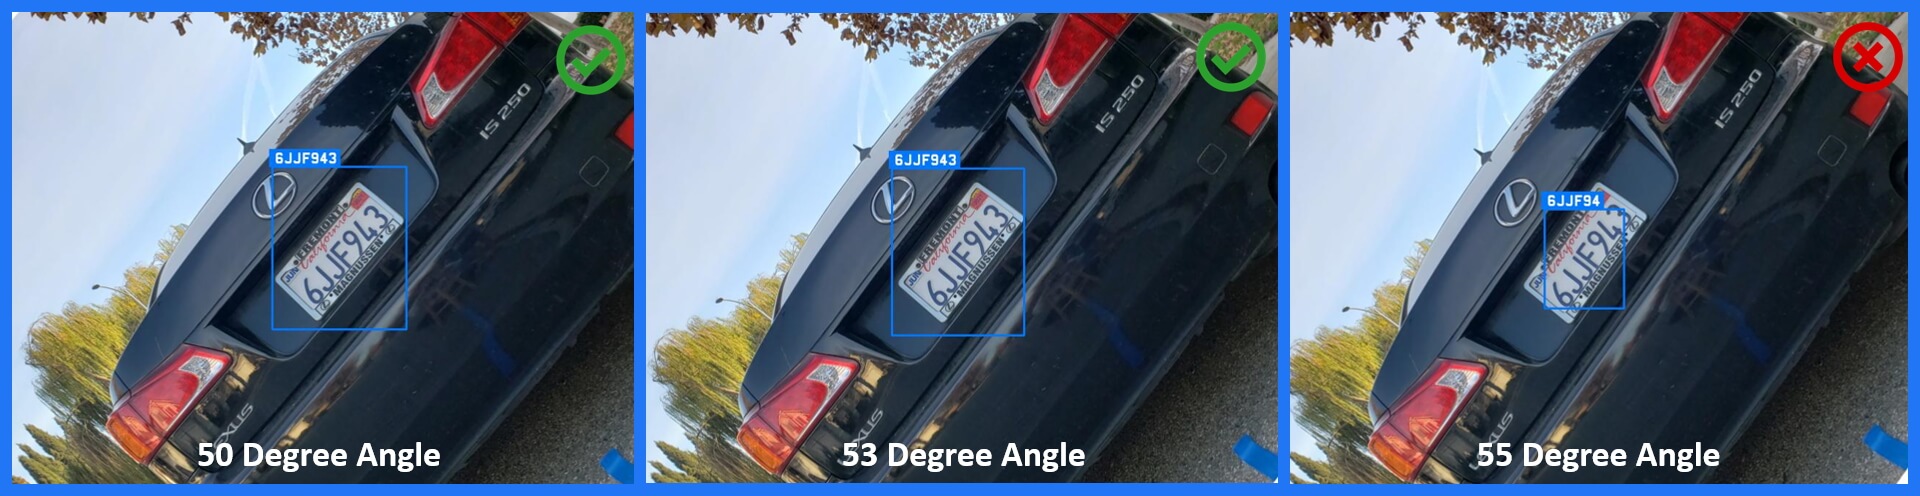 ALPR ANPR Results Camera Tilt Angles